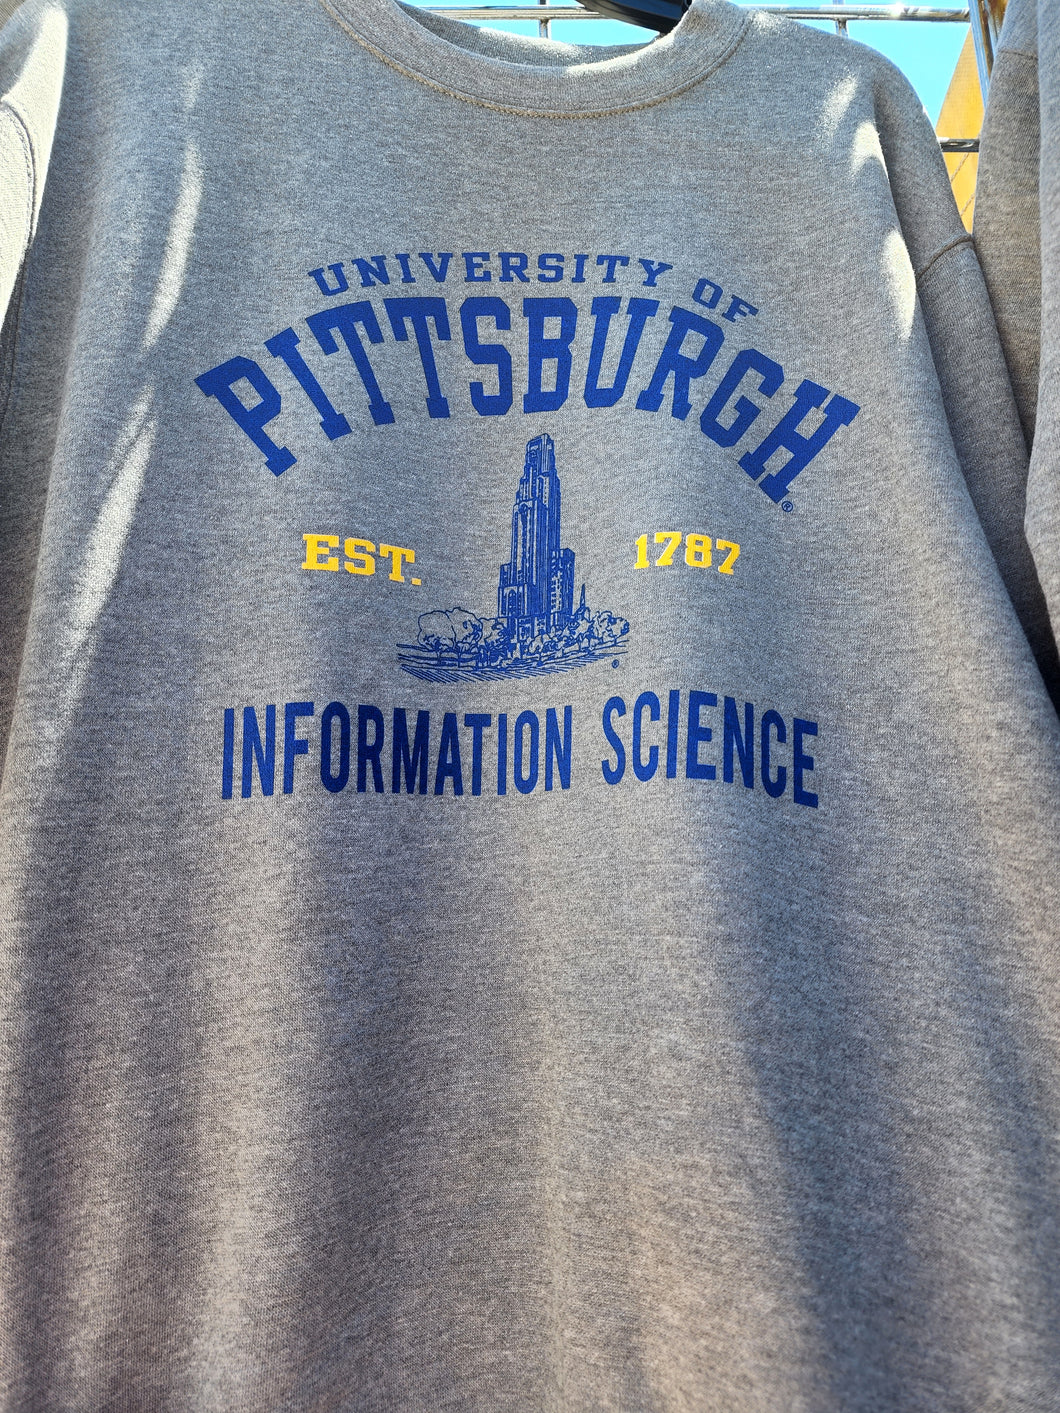 University of Pittsburgh Oversized Crewneck - Majors I-Z